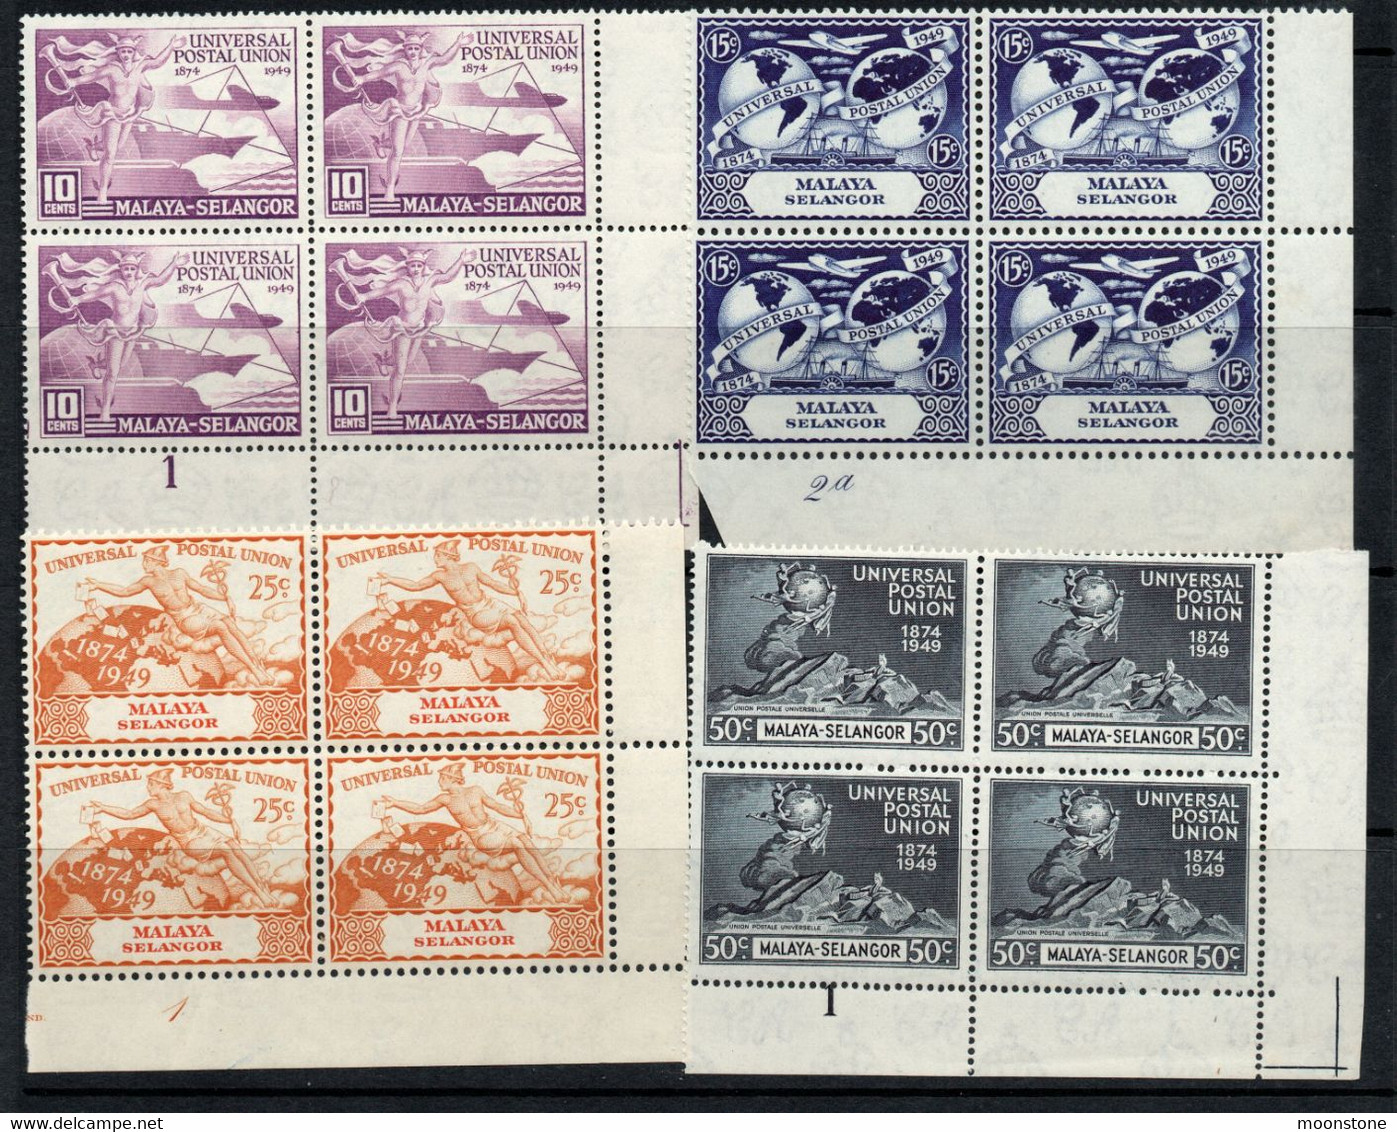 Malaya Selangor 1949 UPU Set Of 4 In Corner Marginal PLATE Blocks, MNH (25c Value Has Creases), SG 111/4 (MS) - Selangor